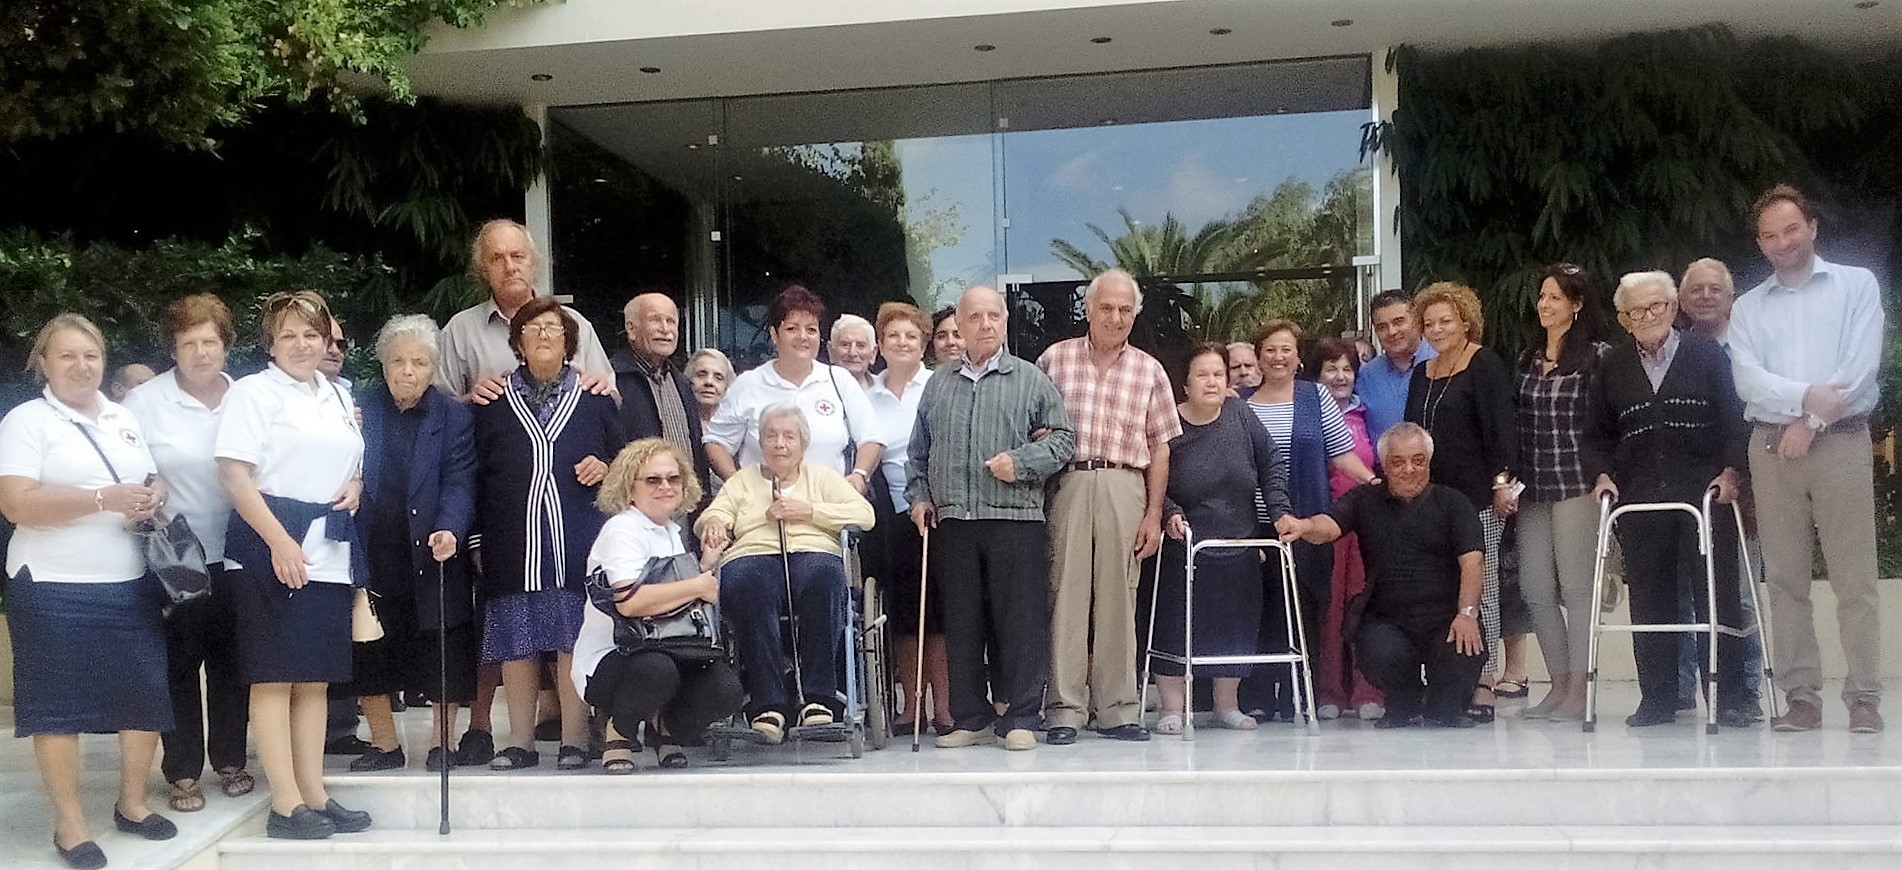 Σε ξενοδοχείο των Χανίων φιλοξενήθηκαν ηλικιωμένοι του γηροκομείου